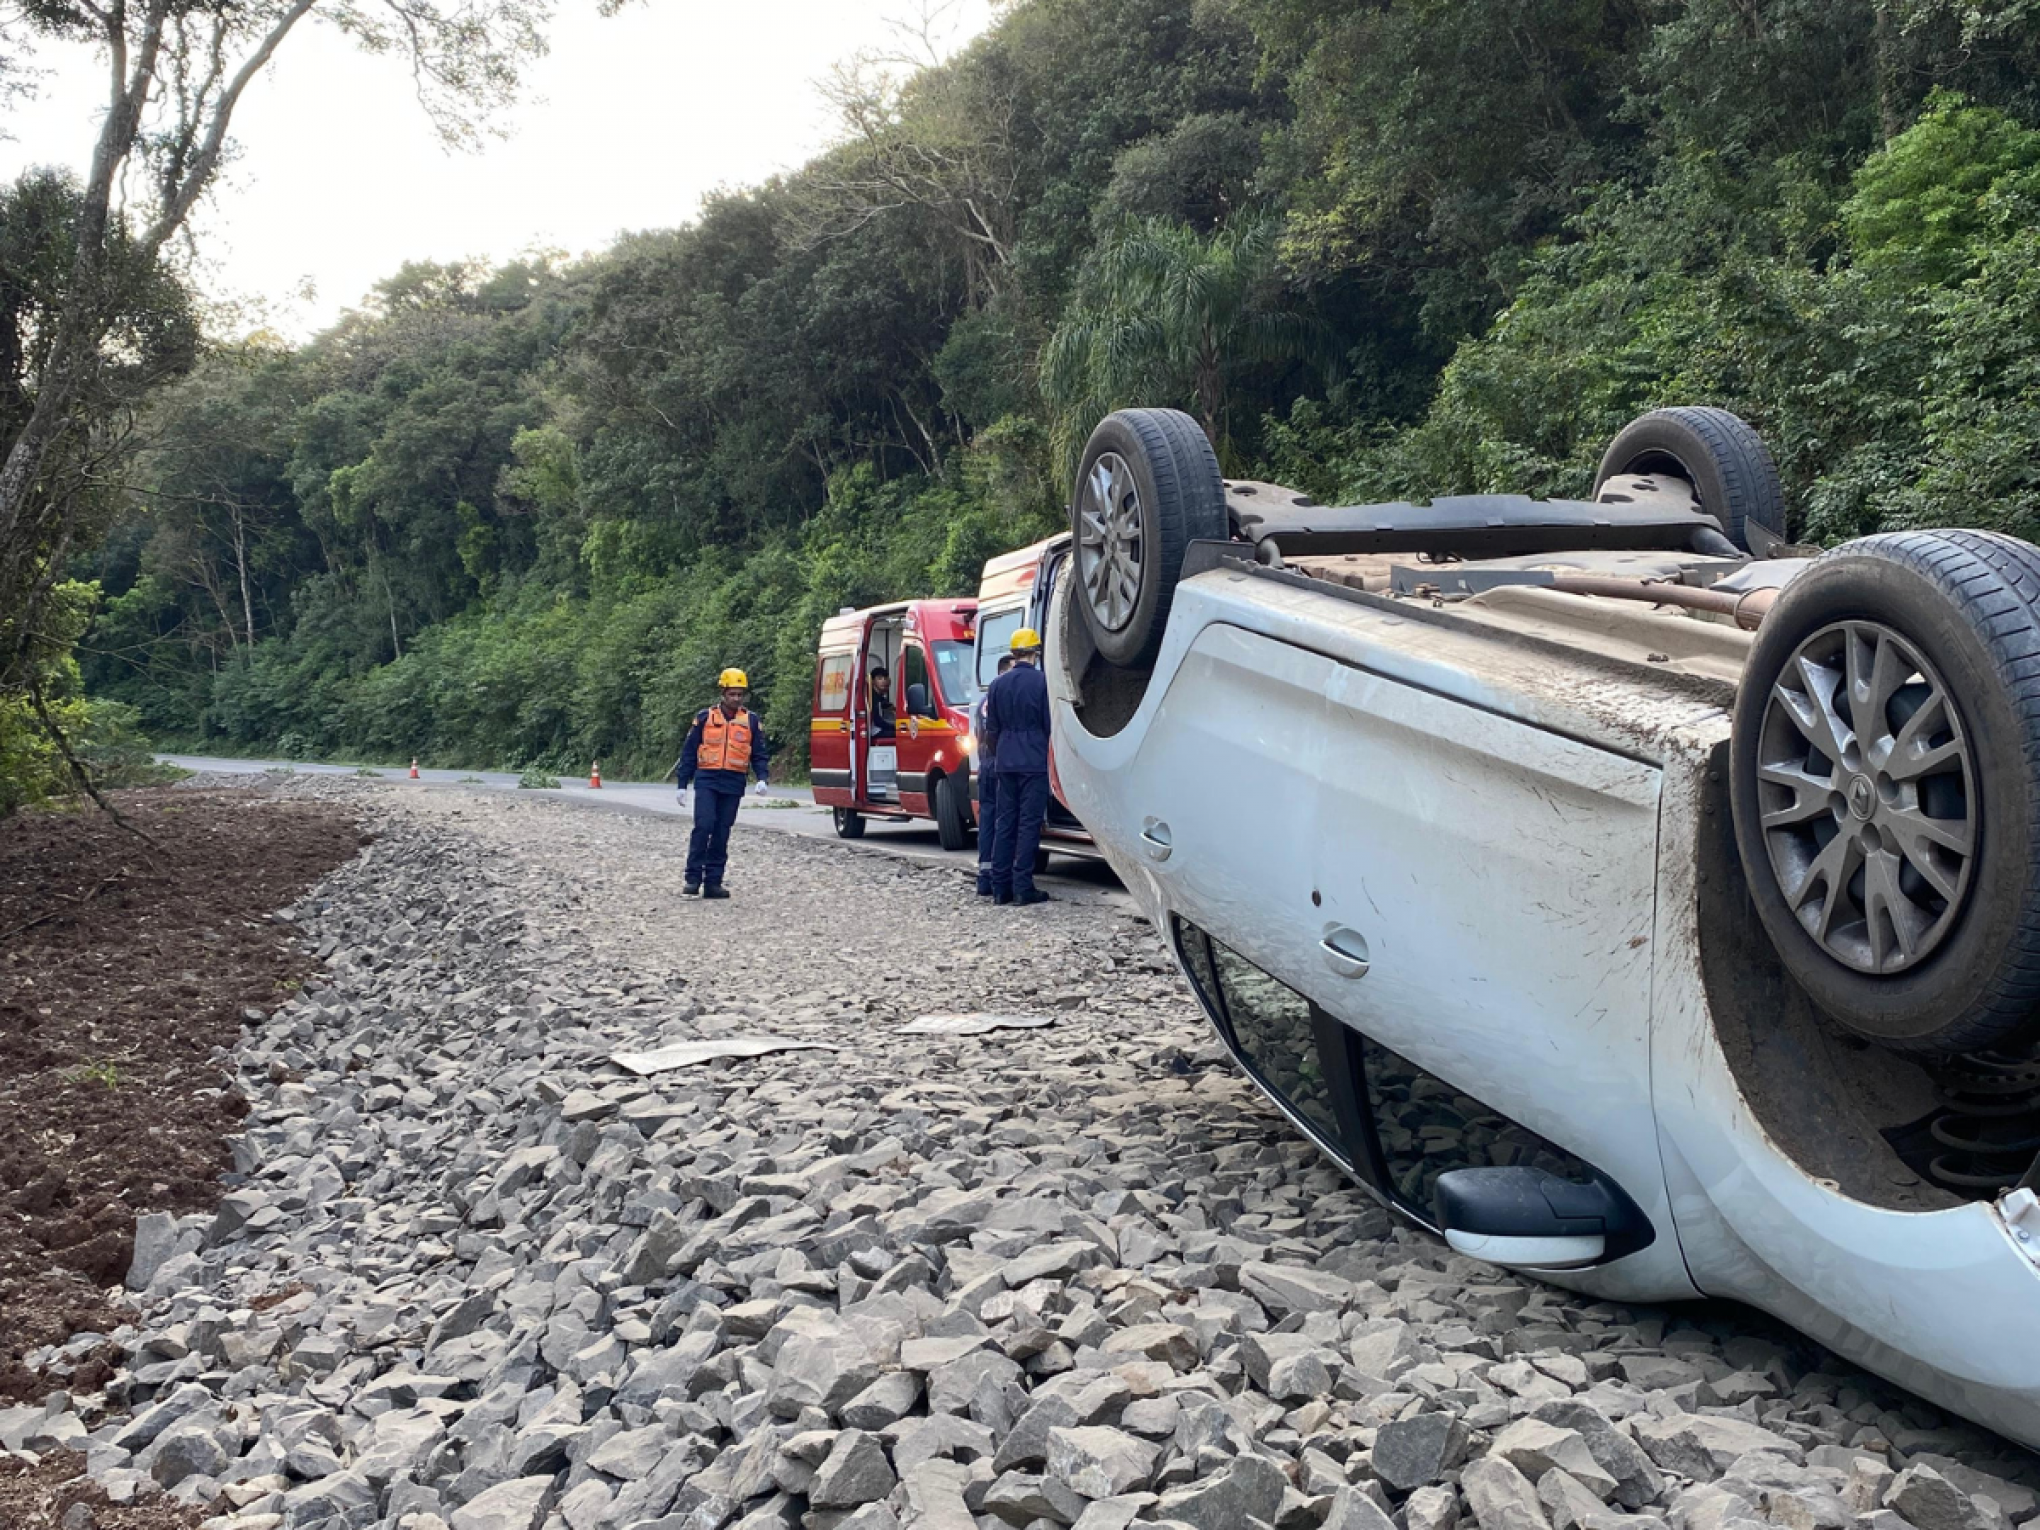 RS-020: Quatro pessoas ficam feridas após carro capotar em Taquara